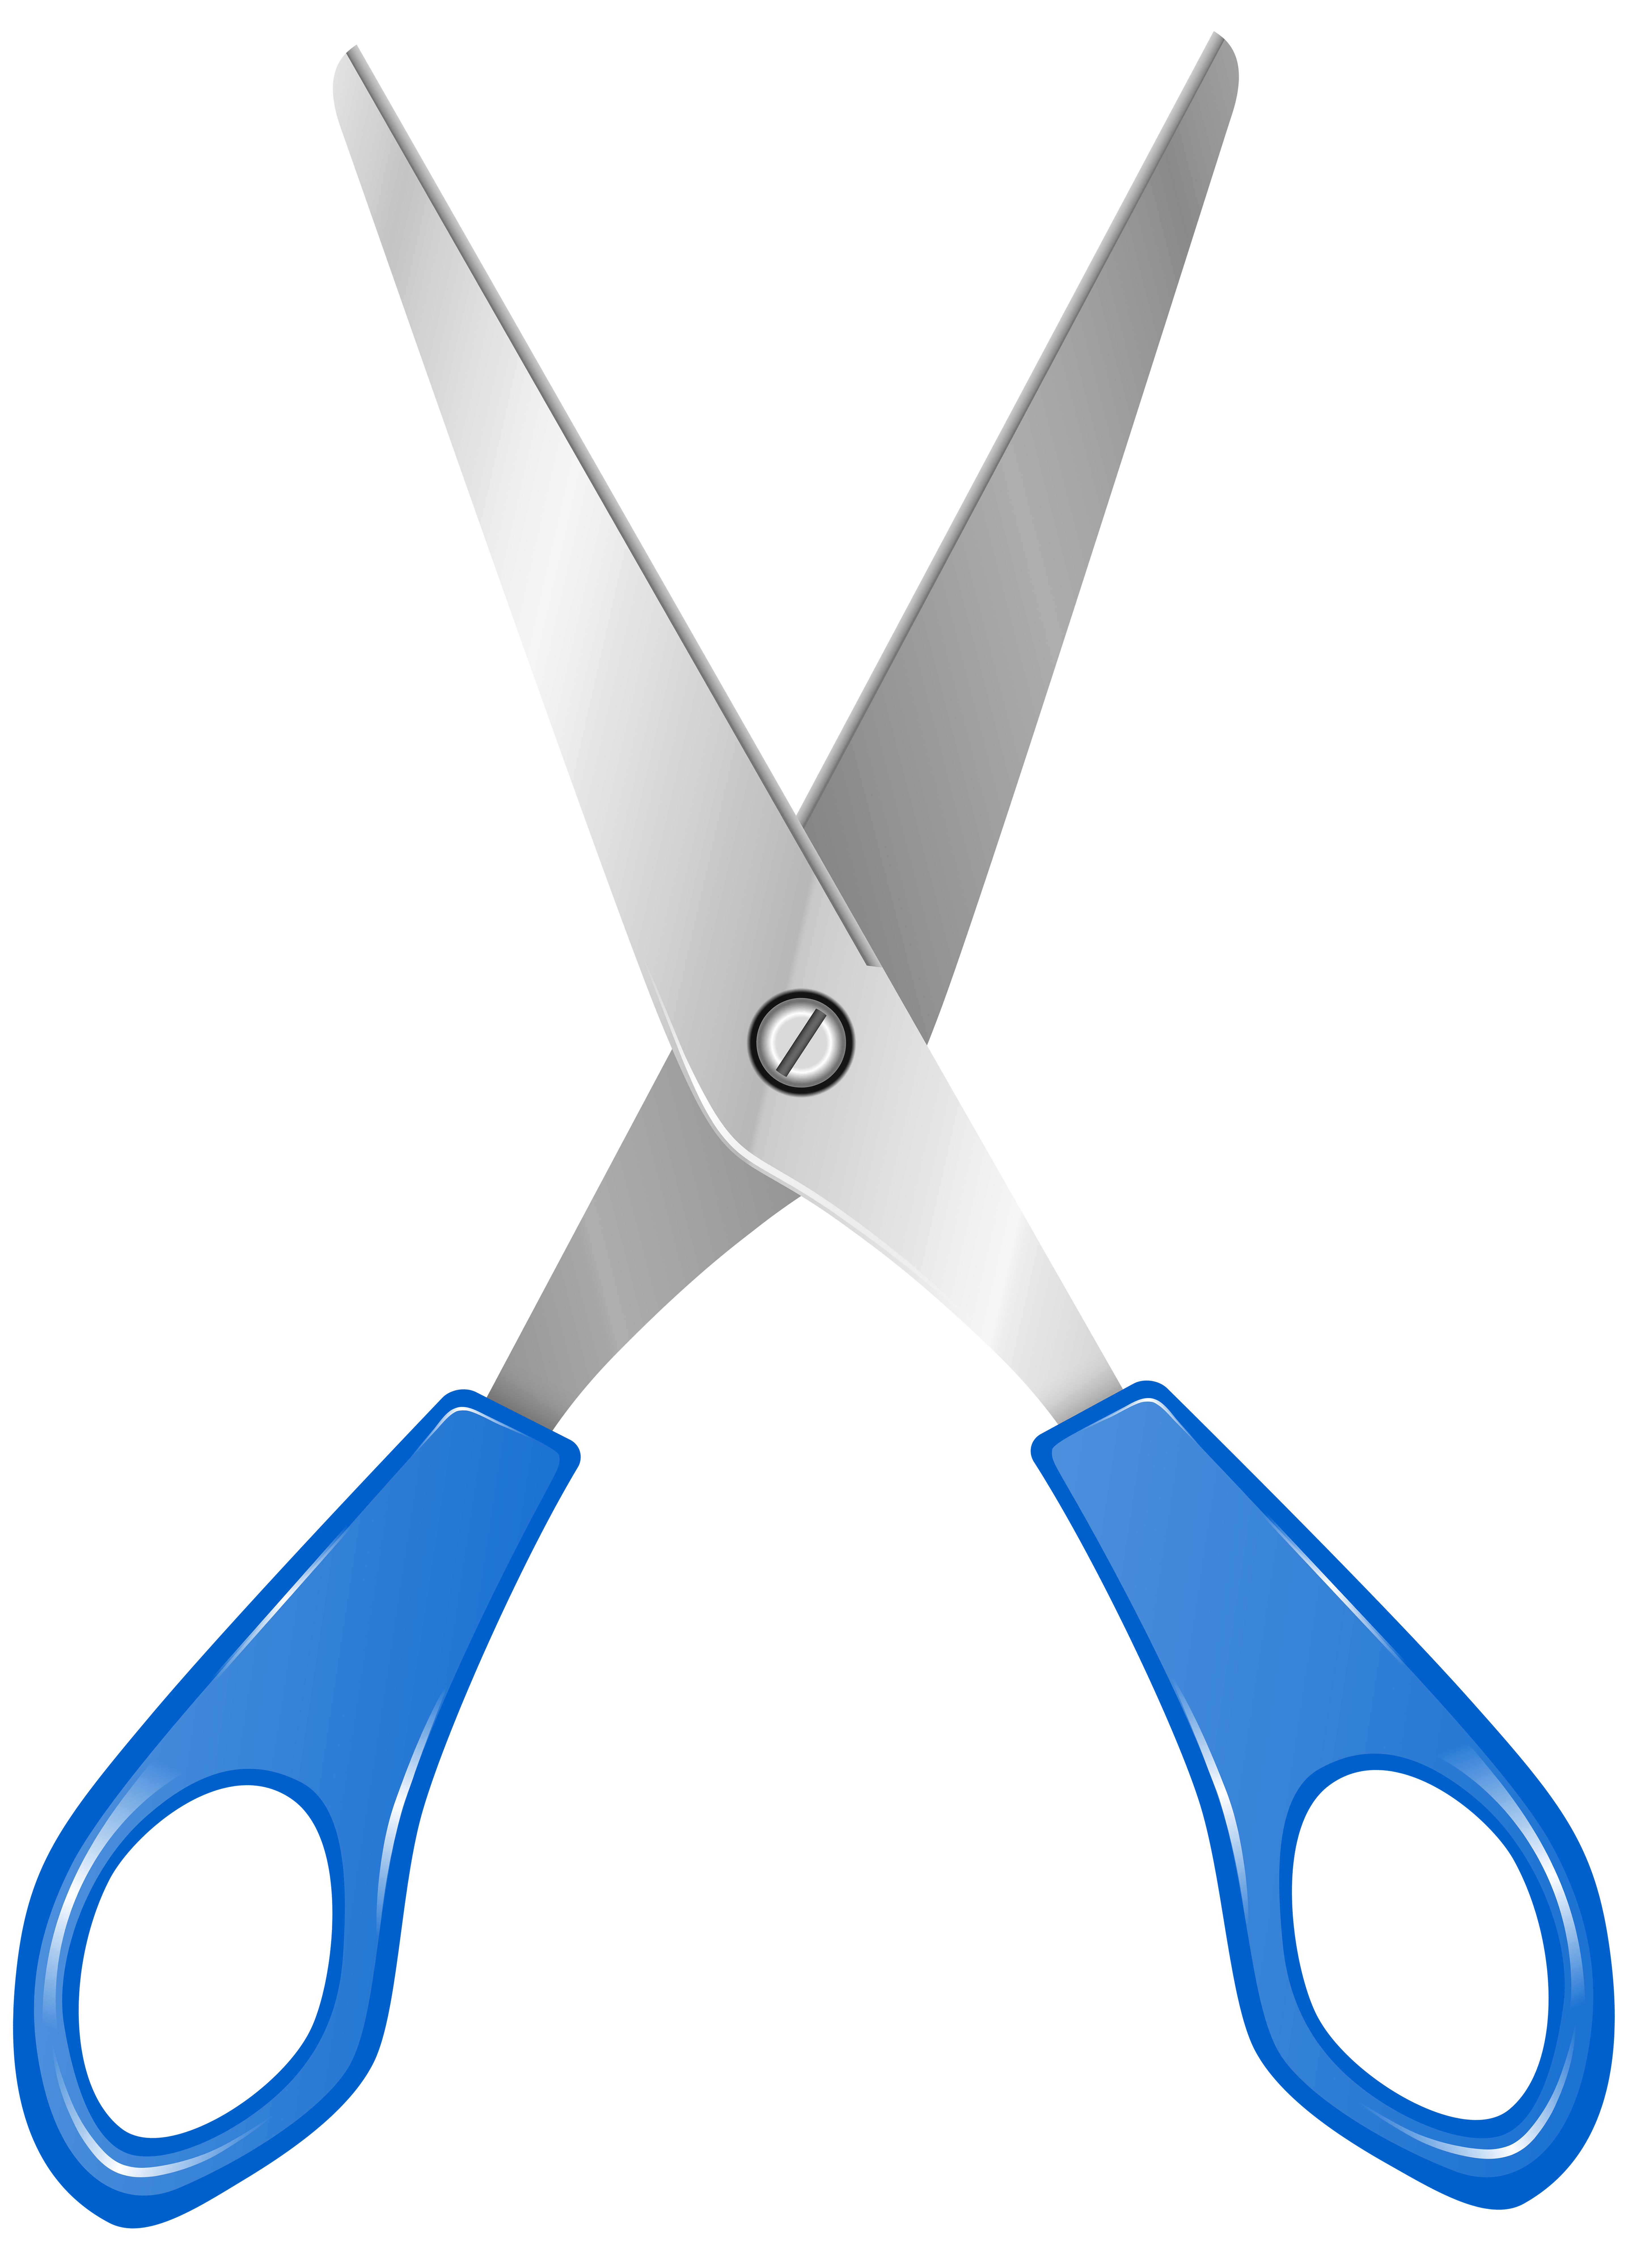 Blue Scissors PNG Clip Art - Best WEB Clipart